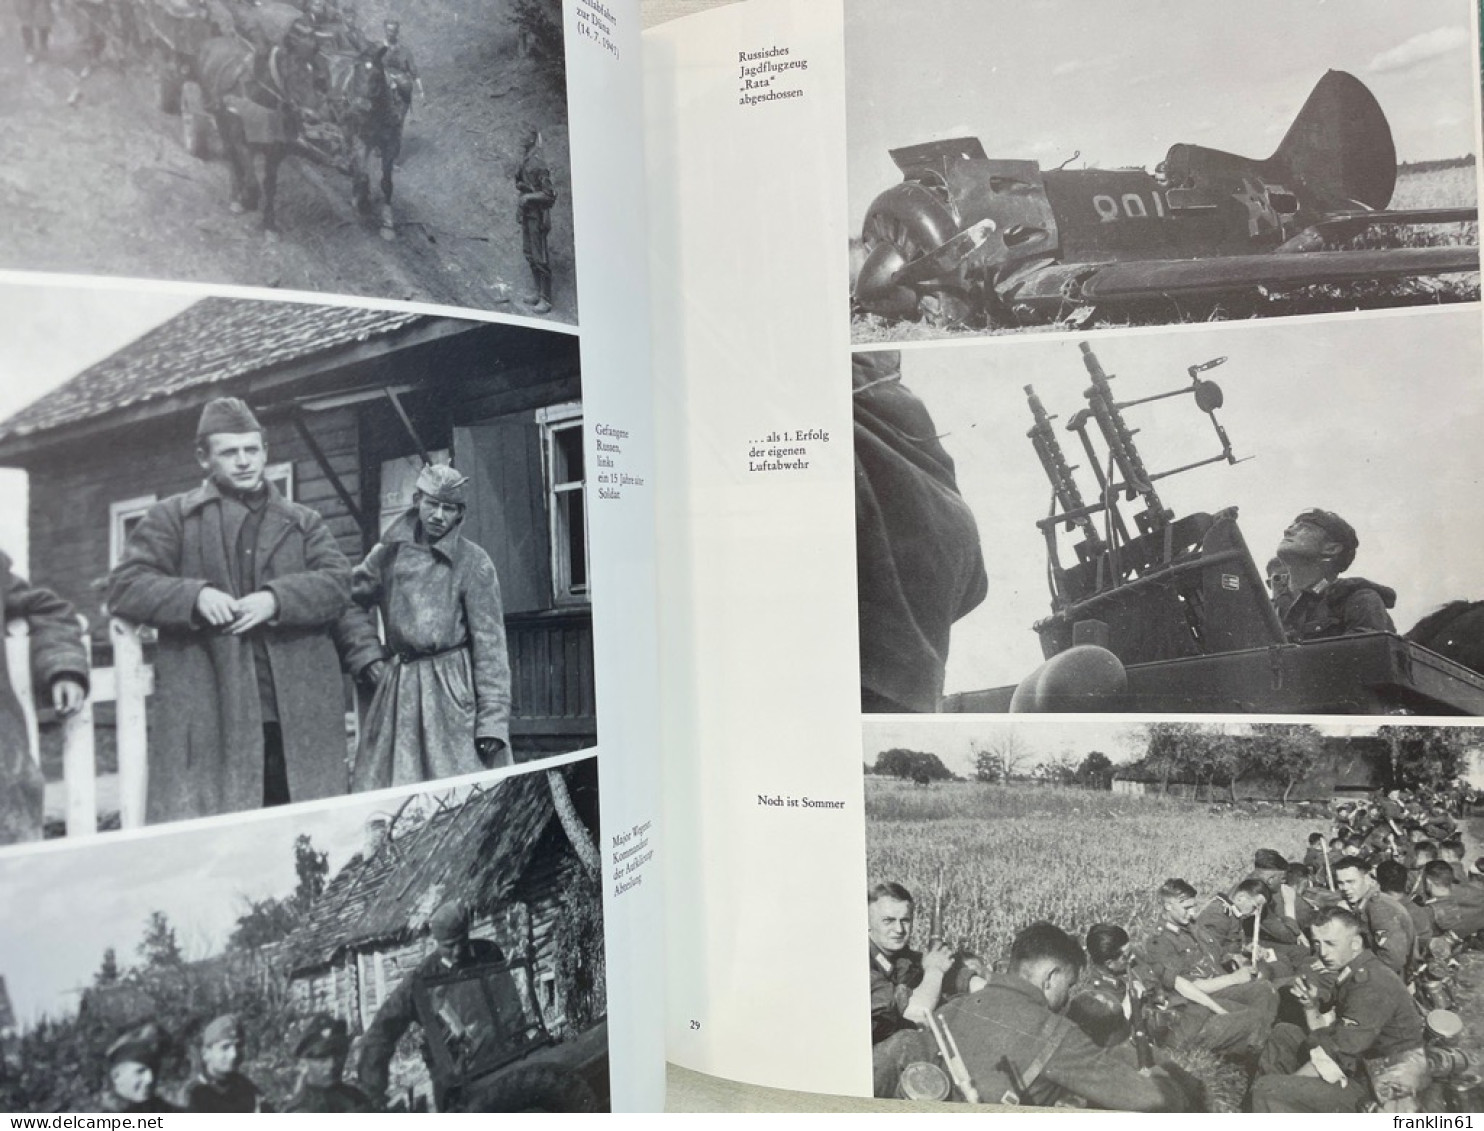 Die guten Glaubens waren; Band 3., Bildband : 1939 - 1945.